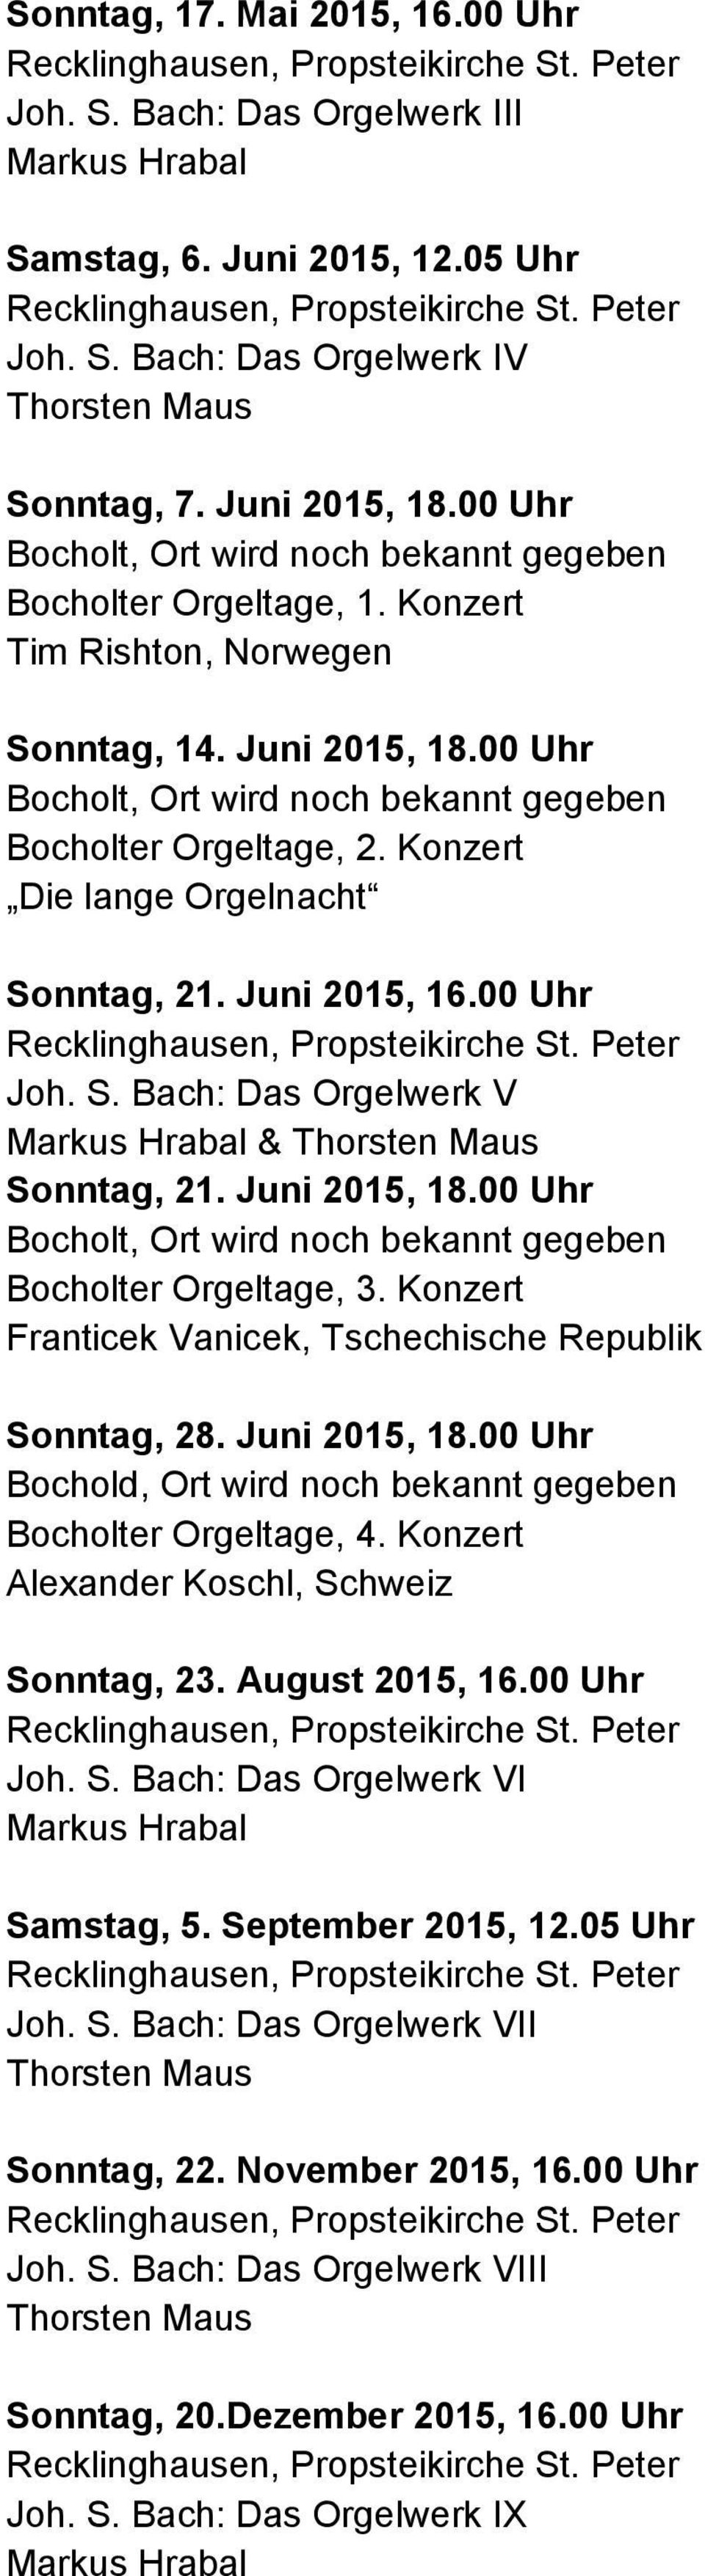 Konzert Die lange Orgelnacht Sonntag, 21. Juni 2015, 16.00 Uhr Joh. S. Bach: Das Orgelwerk V & Sonntag, 21. Juni 2015, 18.00 Uhr Bocholt, Ort wird noch bekannt gegeben Bocholter Orgeltage, 3.